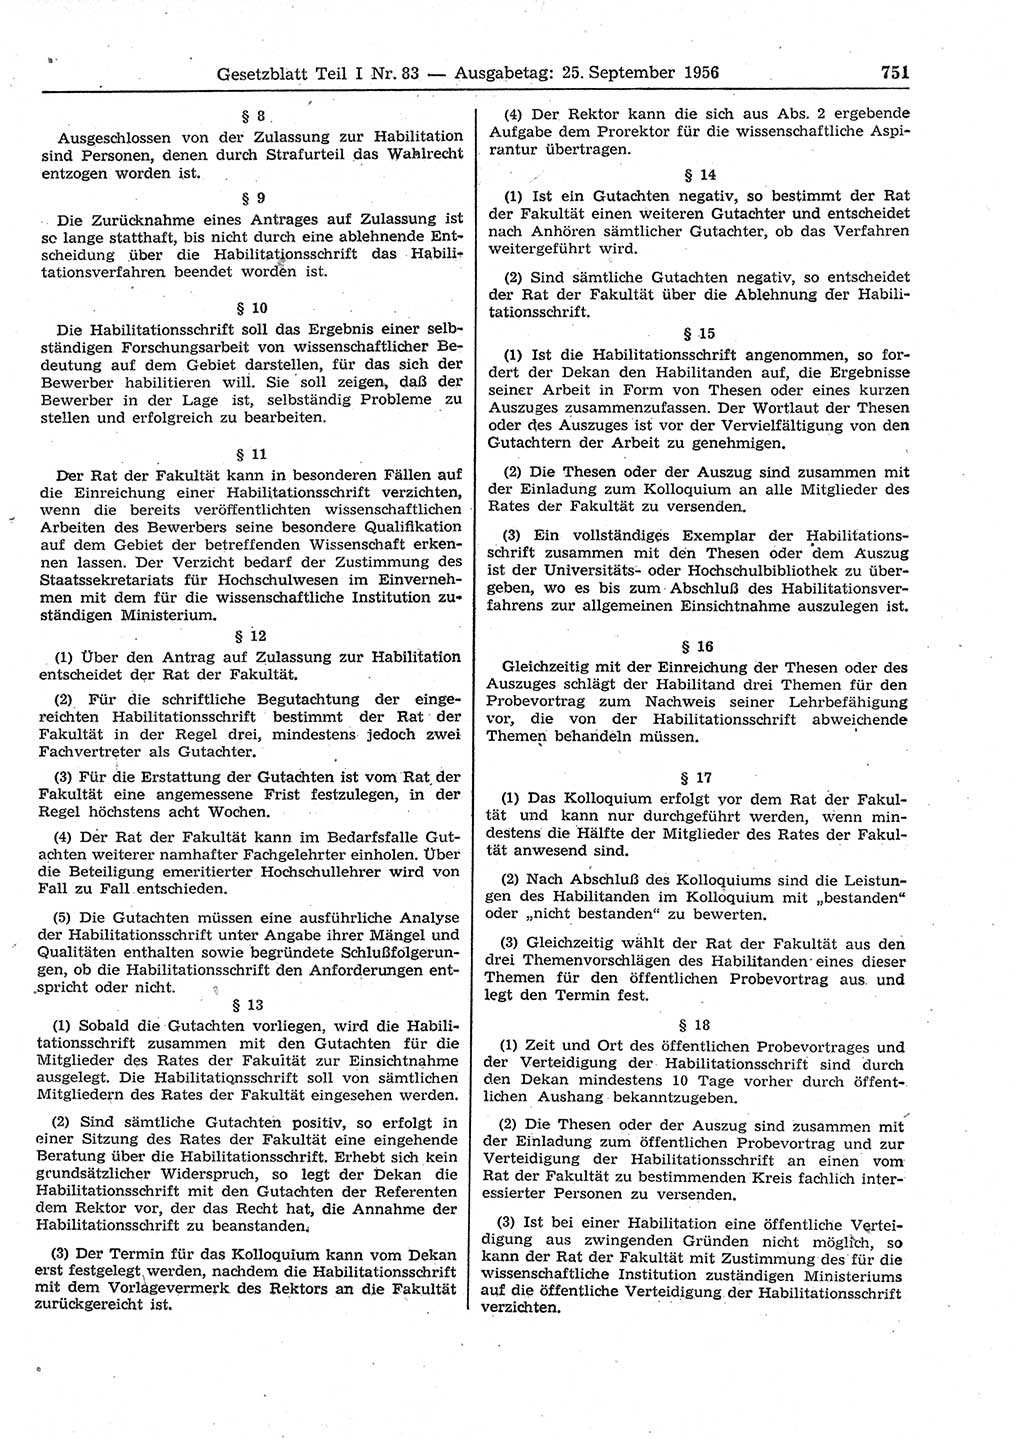 Gesetzblatt (GBl.) der Deutschen Demokratischen Republik (DDR) Teil Ⅰ 1956, Seite 751 (GBl. DDR Ⅰ 1956, S. 751)